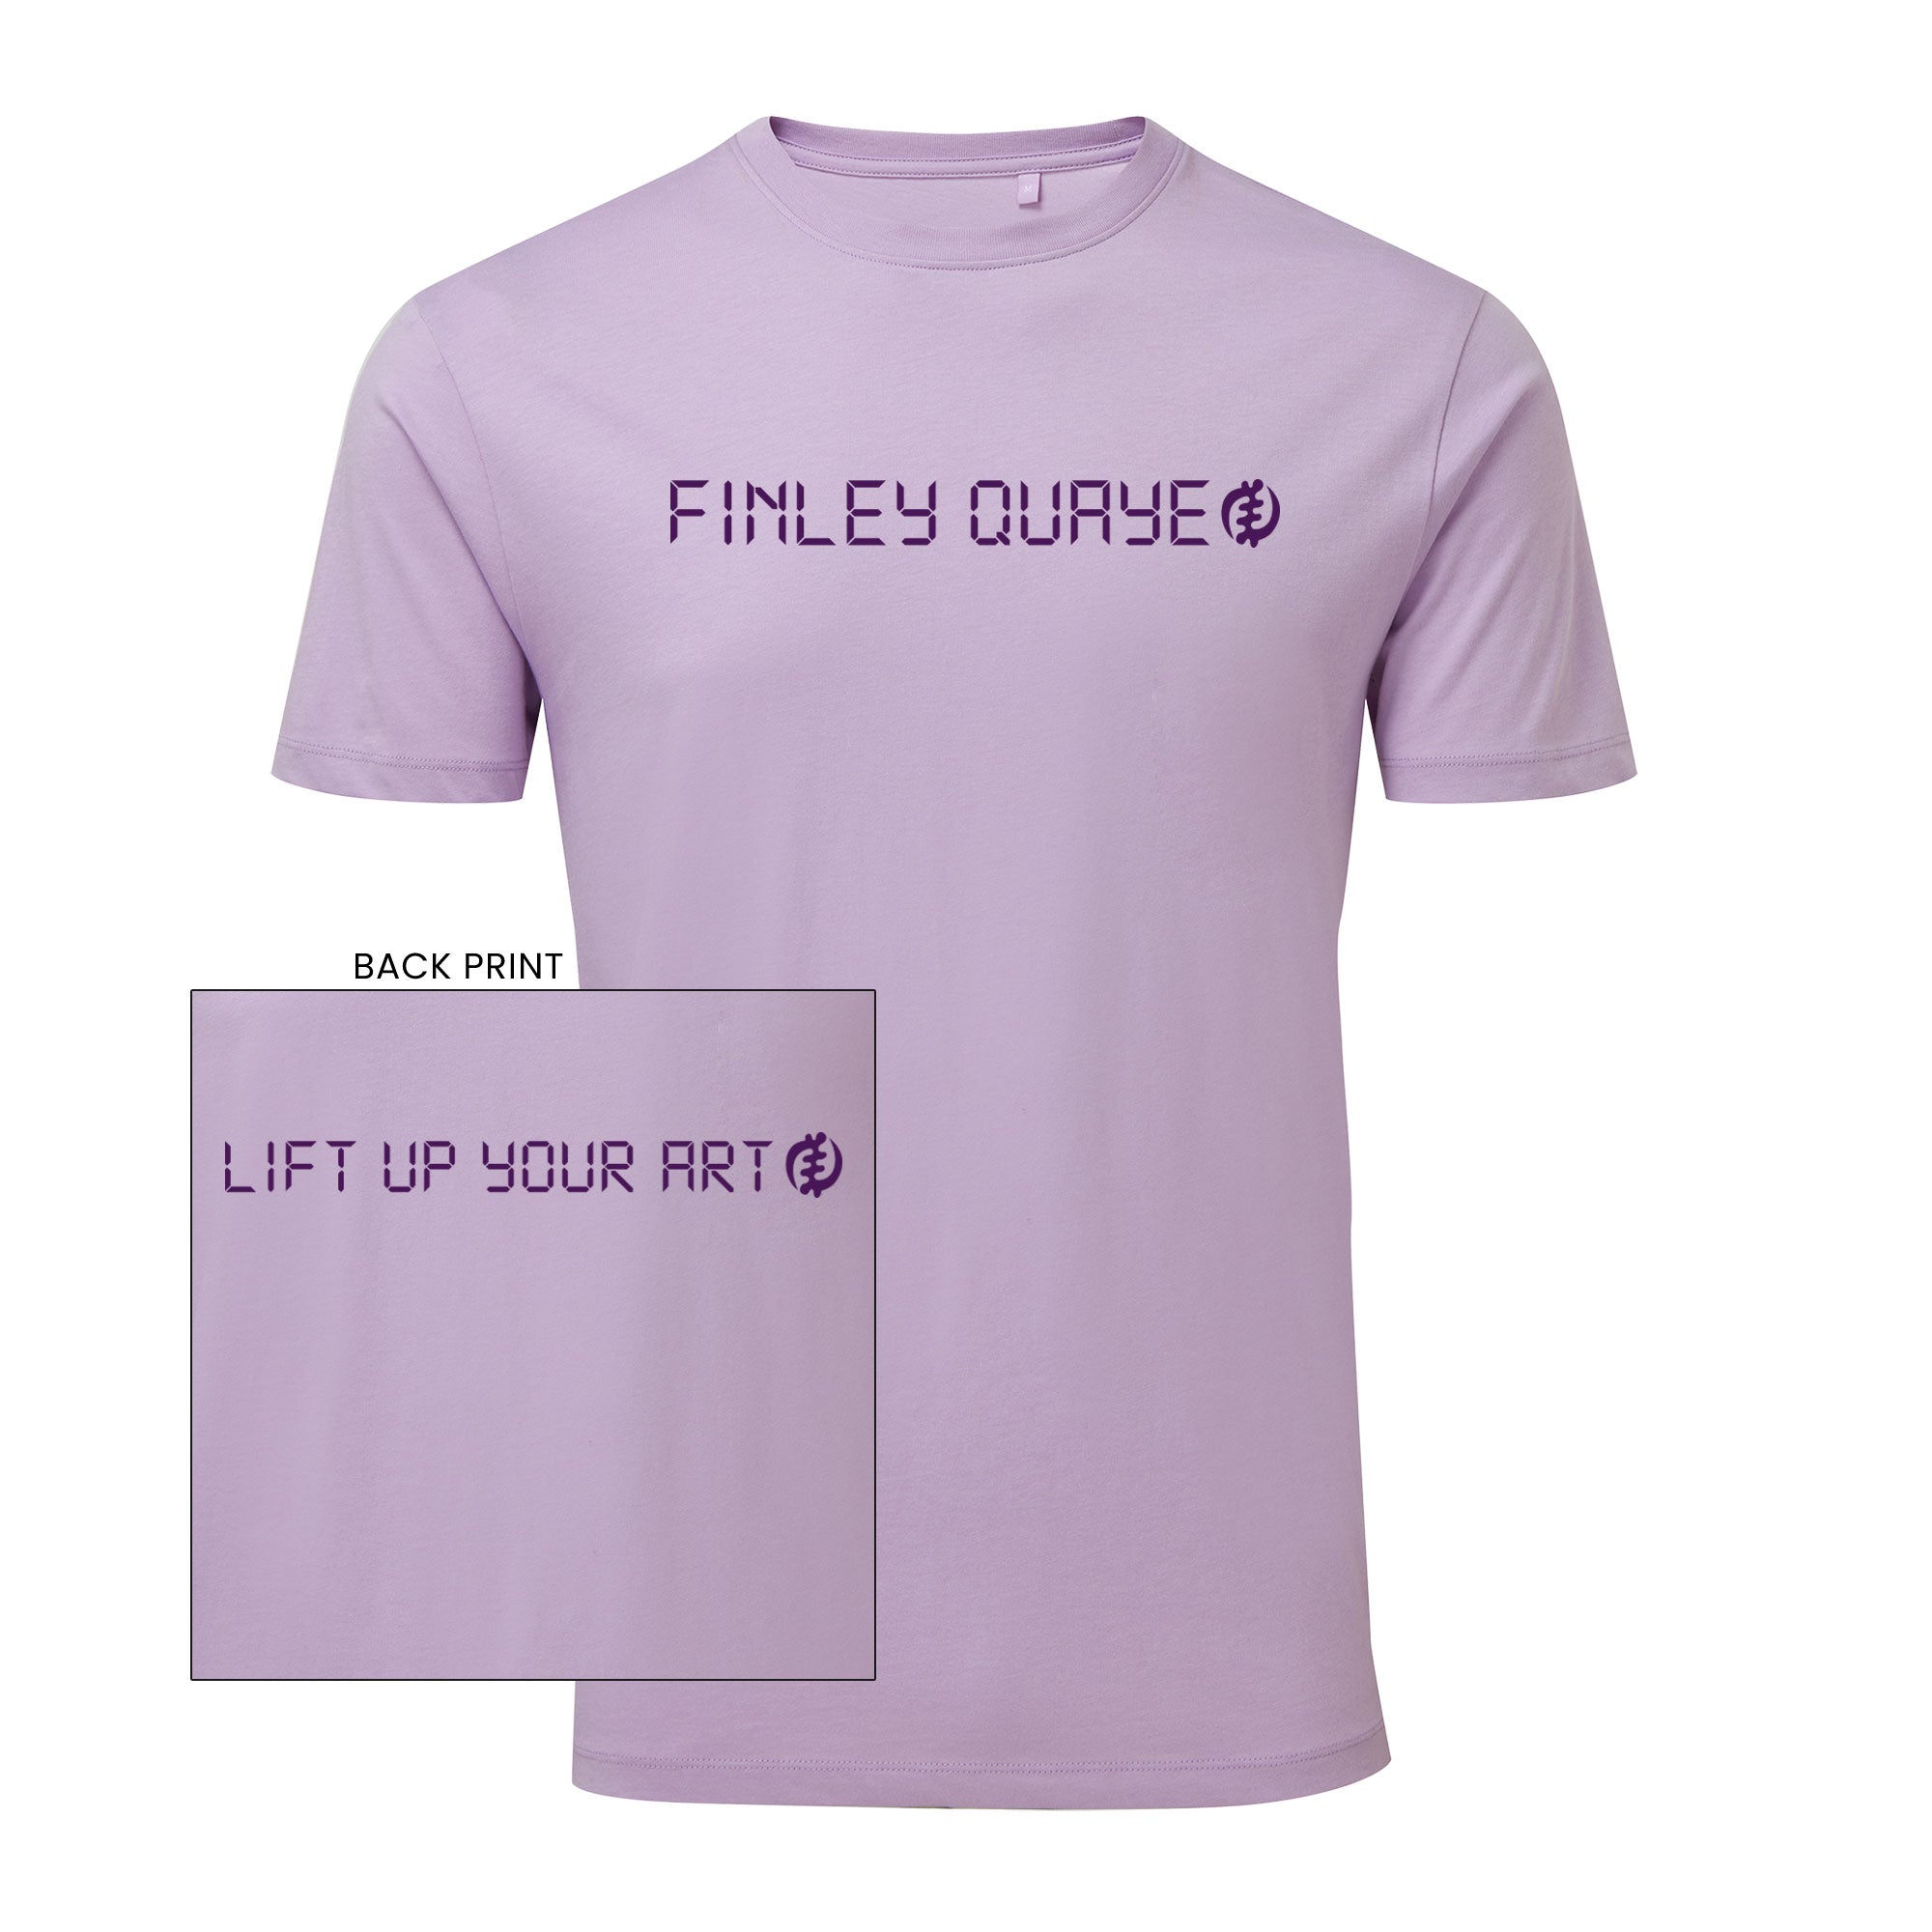 Finley Quaye T-Shirt - Lift up your art tee